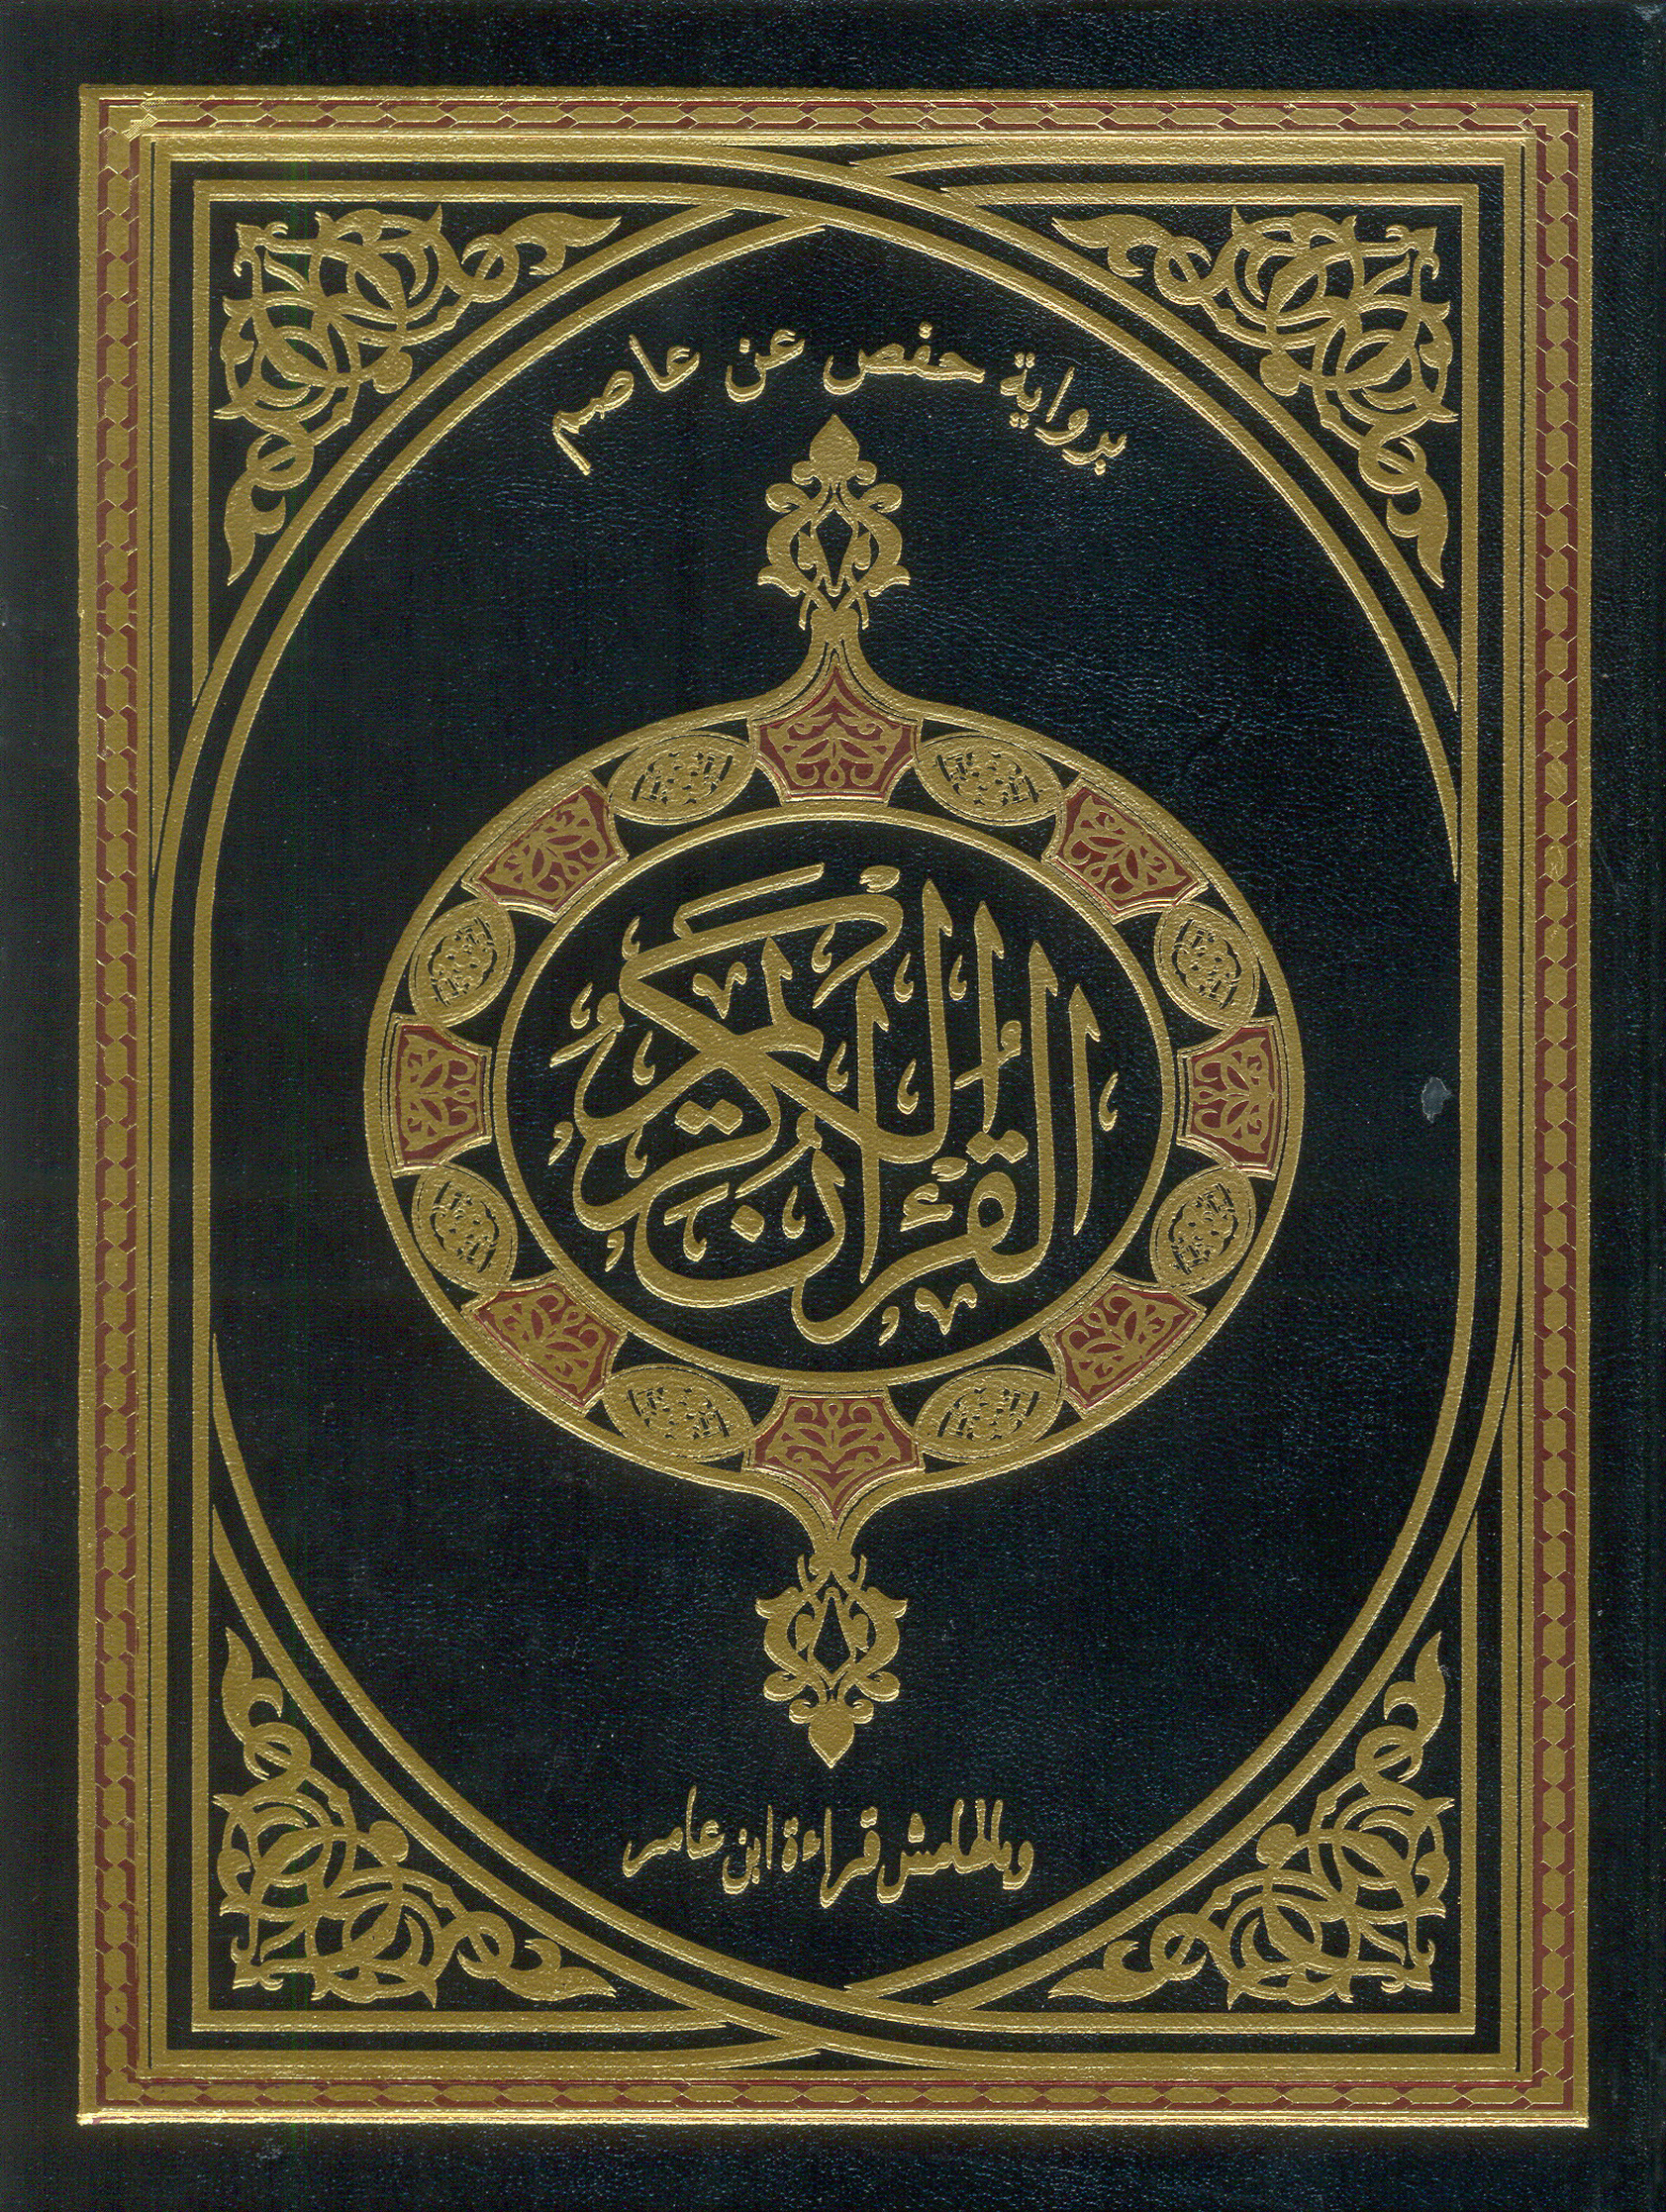 تحميل كتاب القرآن الكريم برواية حفص عن عاصم وبالهامش قراءة ابن عامر الشامي